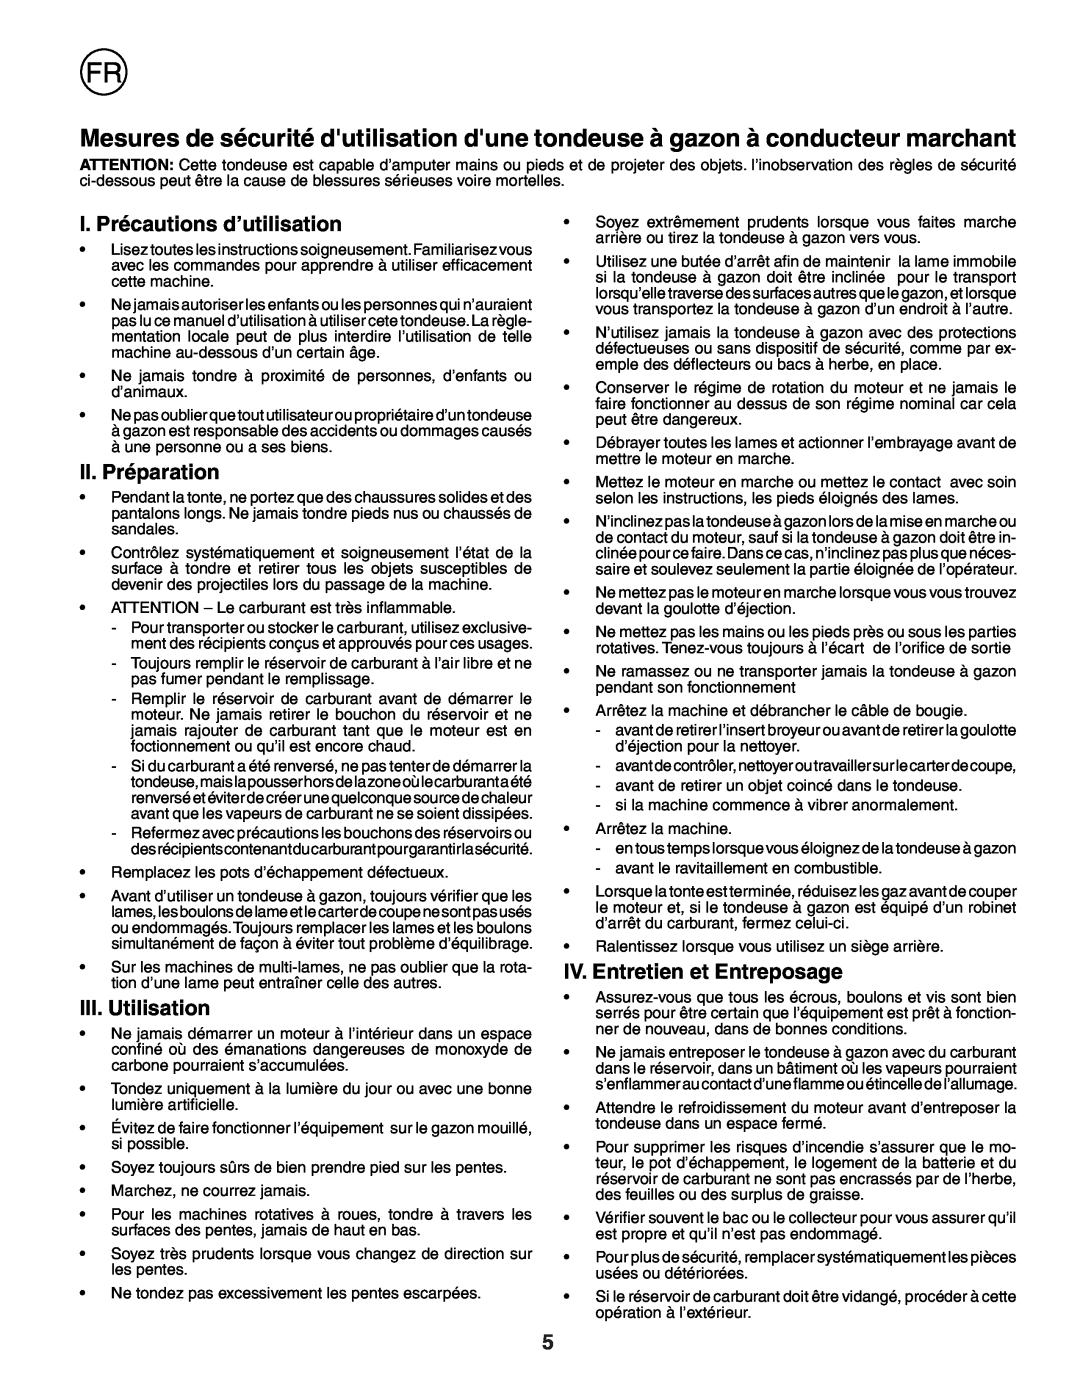 Husqvarna R152SV I. Précautions d’utilisation, II. Préparation, III. Utilisation, IV. Entretien et Entreposage 